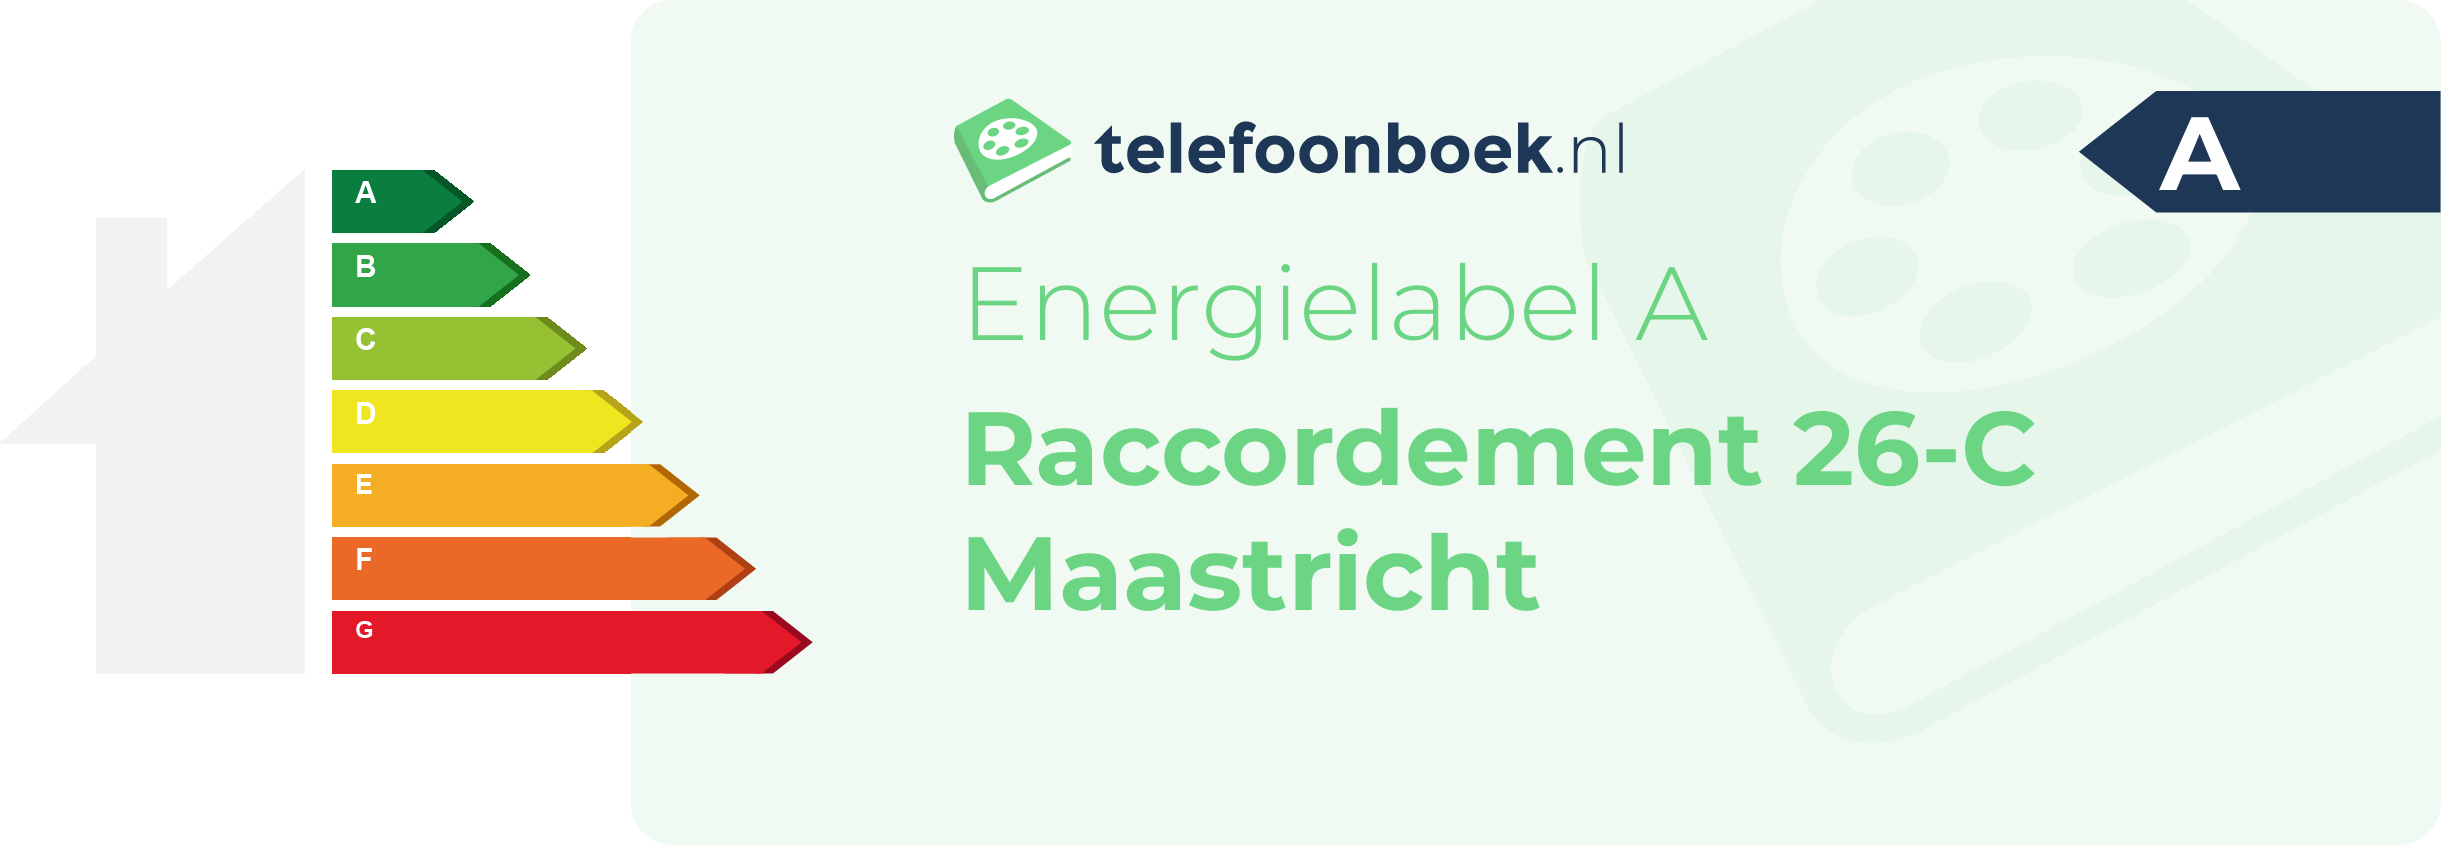 Energielabel Raccordement 26-C Maastricht